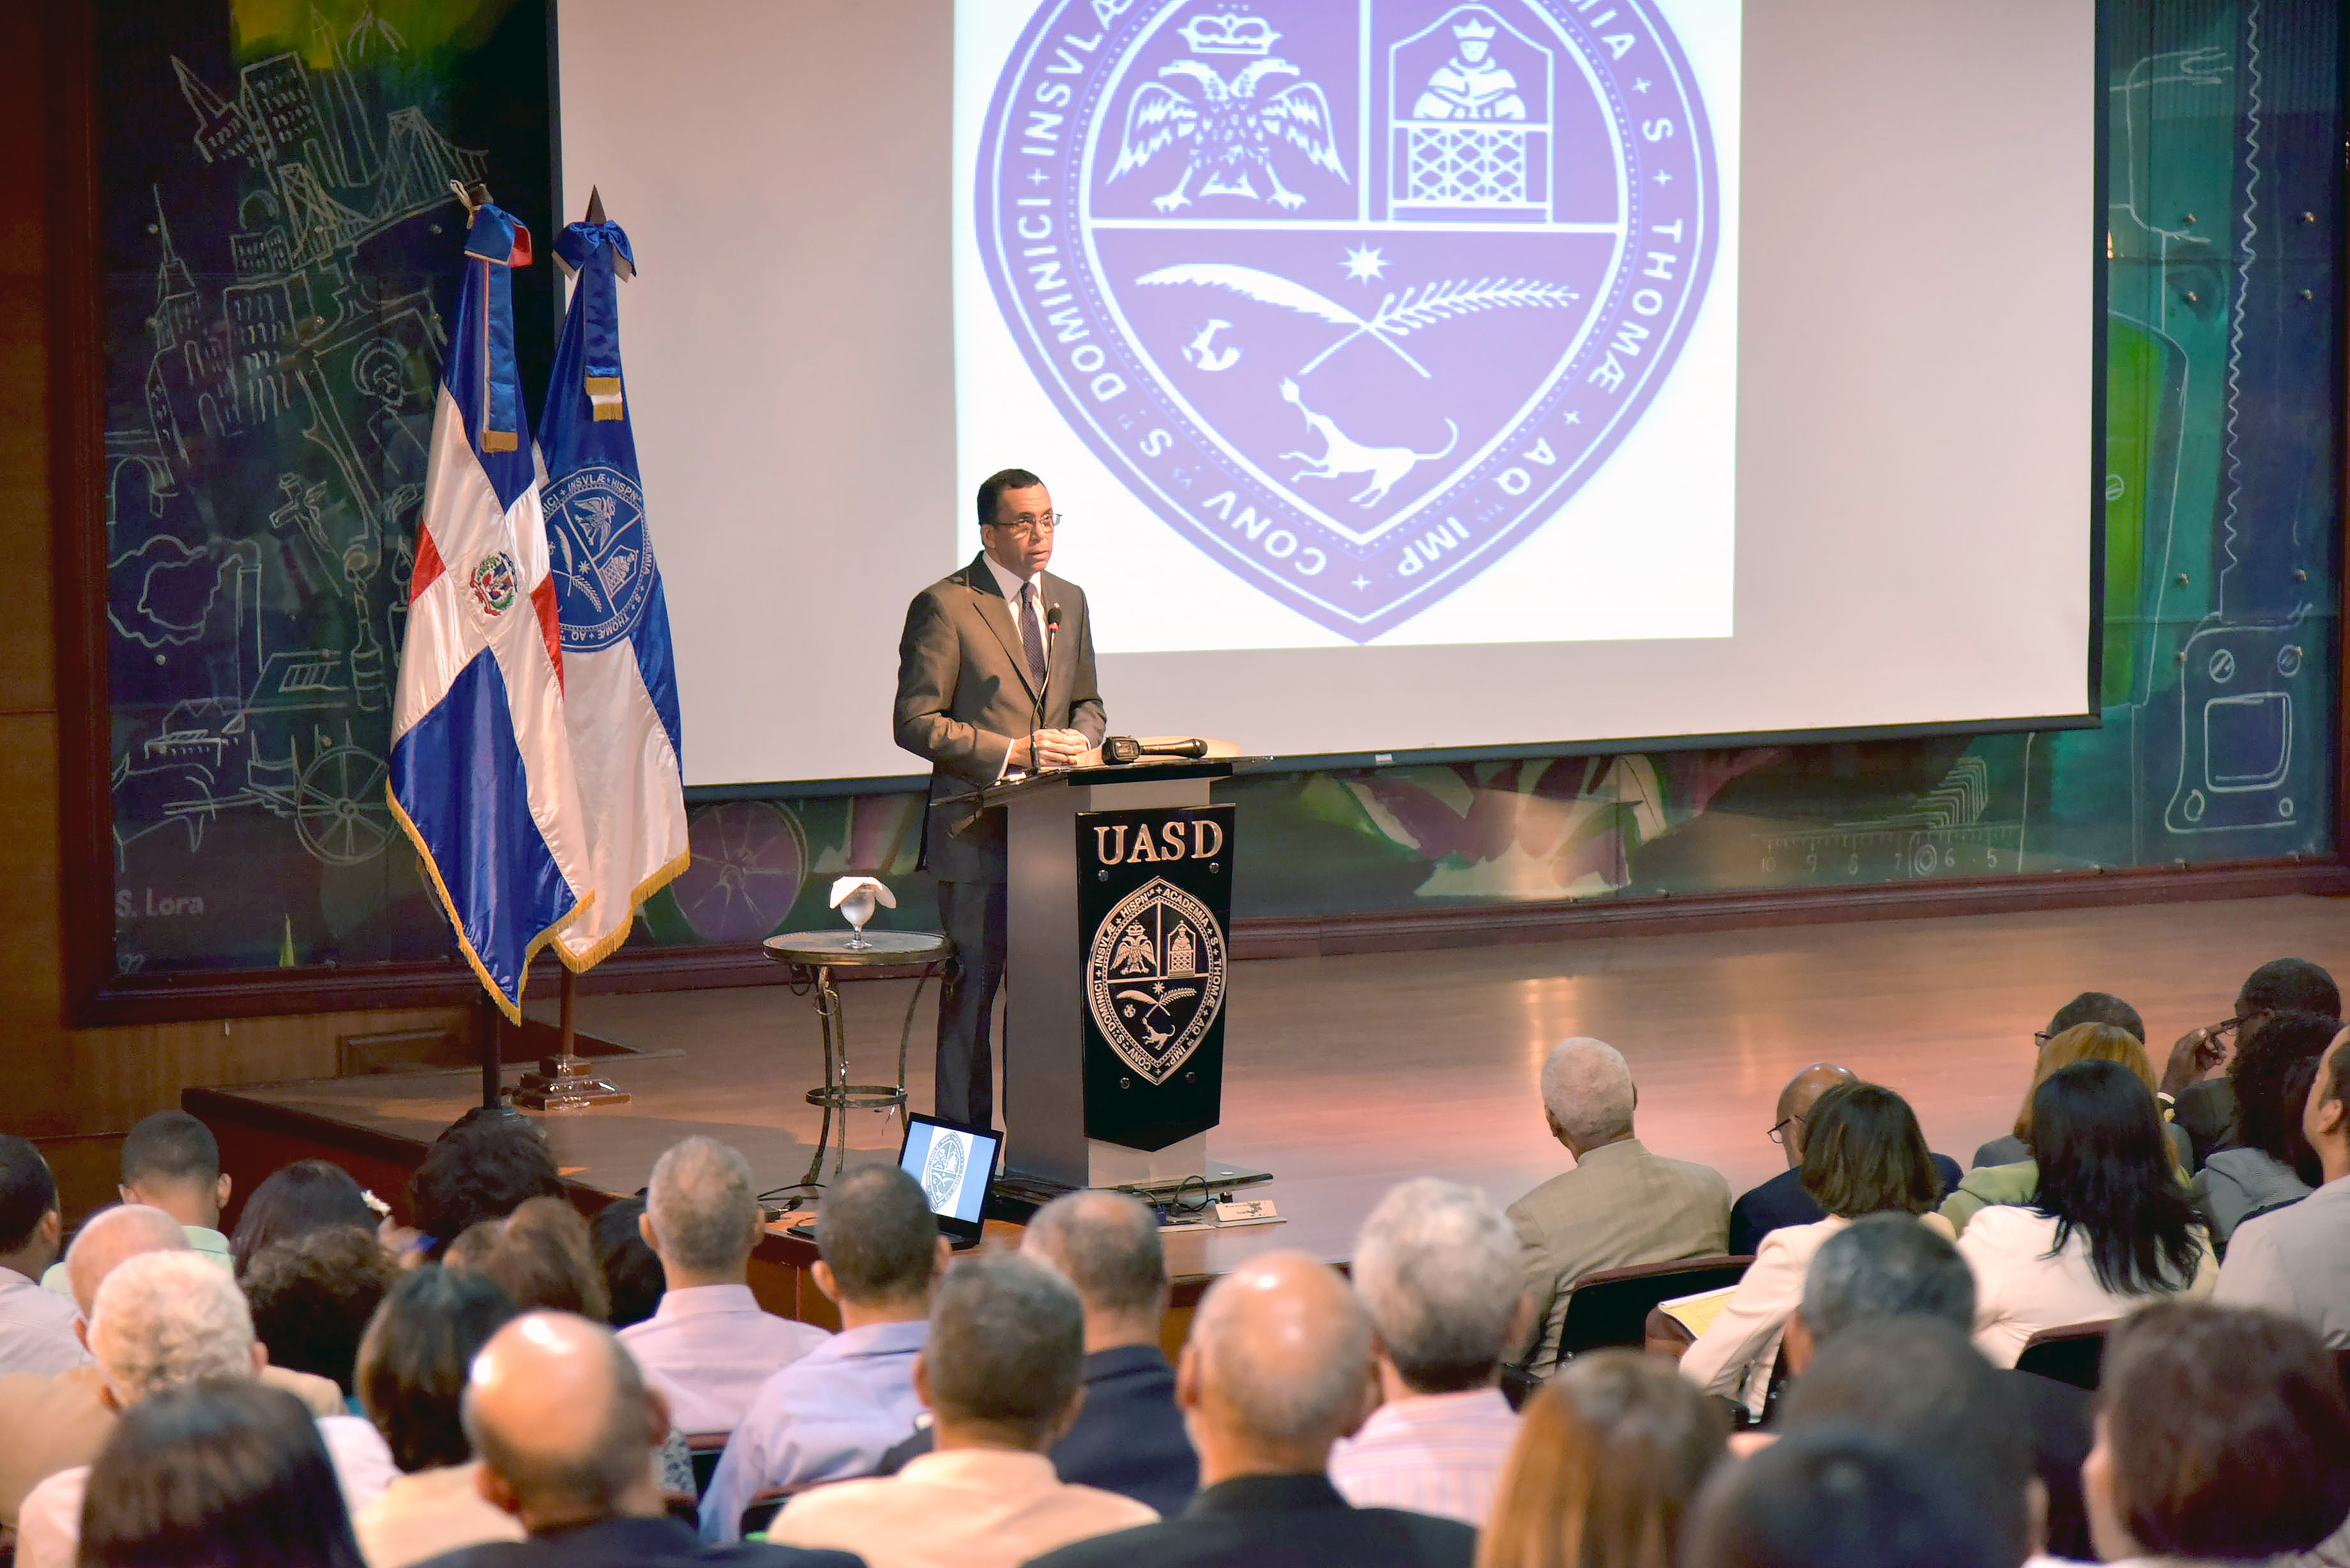  imagen Ministro Andrés Navarro de pie desde podium en auditorio en la UASD se dirige a cientos de personas  